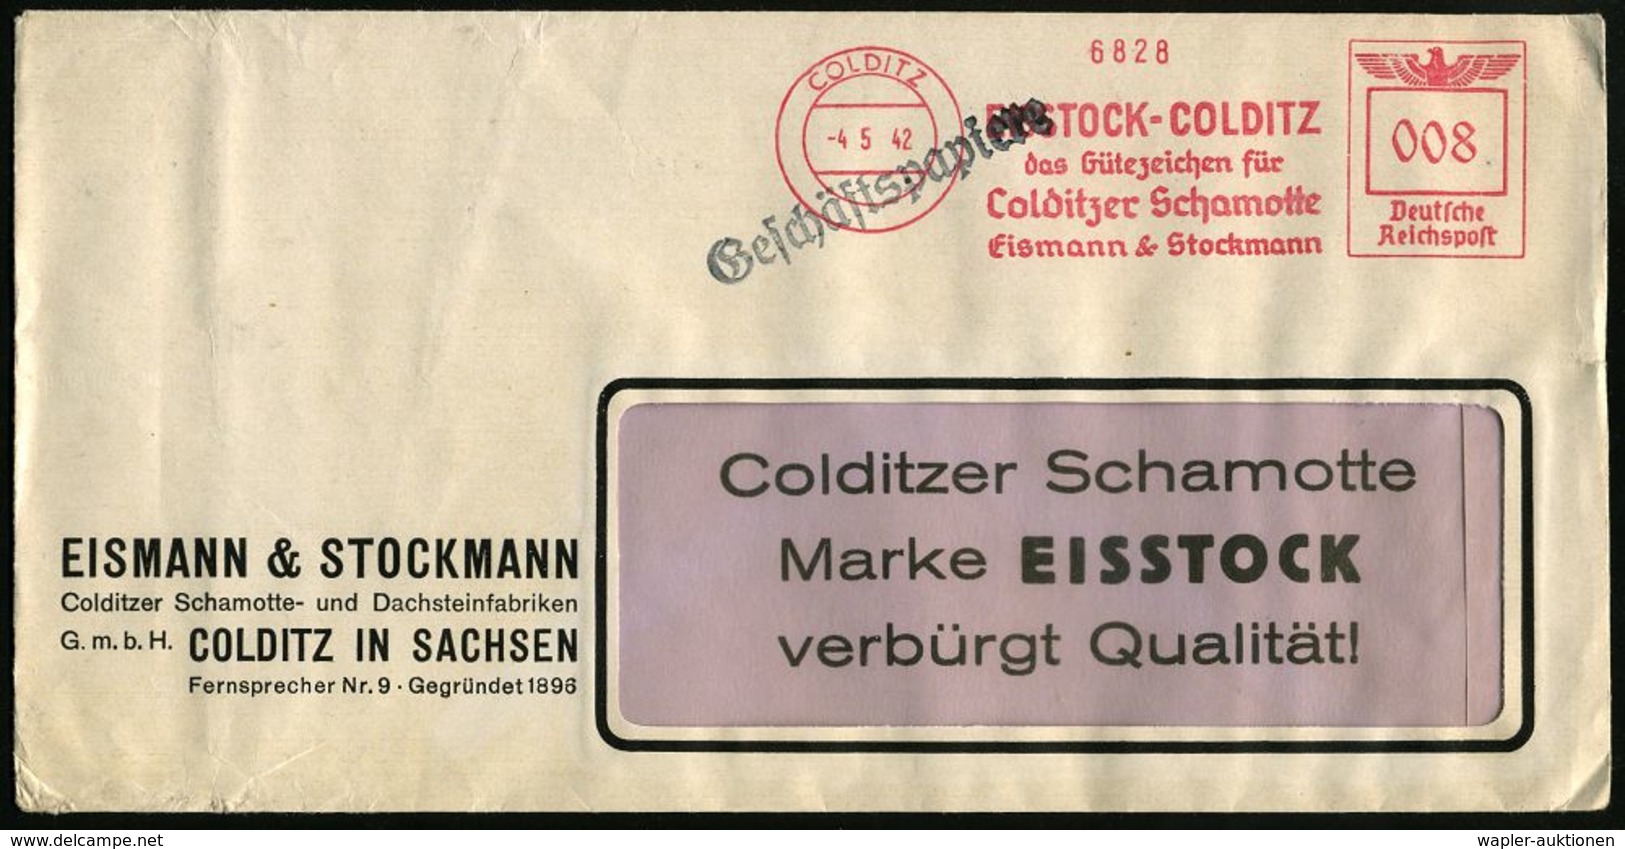 KLIMATECHNIK ( WÄRME- & KÄLTE) : COLDITZ/ EISSTOCK-COLDITZ/ ..Colditzer Schamotte/ Eismann & Stockmann 1942 (4.5.) AFS A - Non Classés